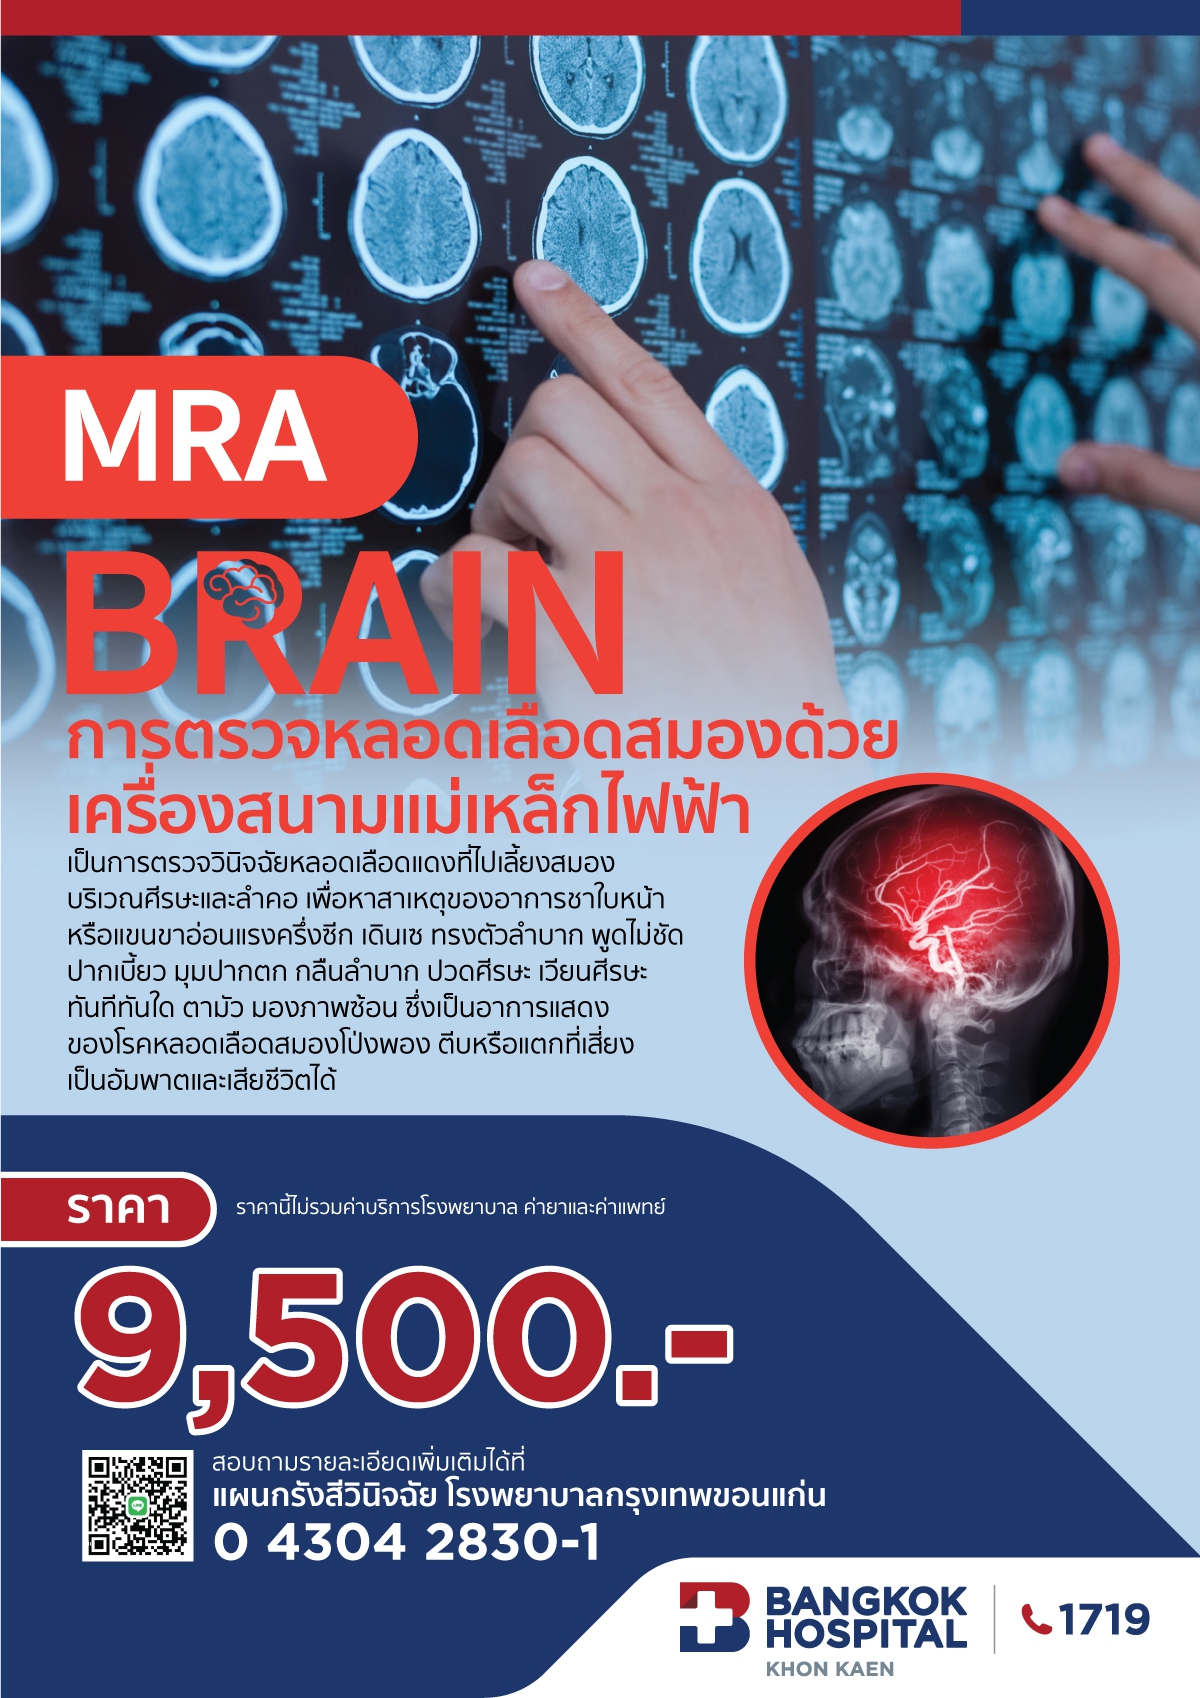 MRA BRAIN การตรวจหลอดเลือดสมองด้วยเครื่องสนามแม่เหล็กไฟฟ้า